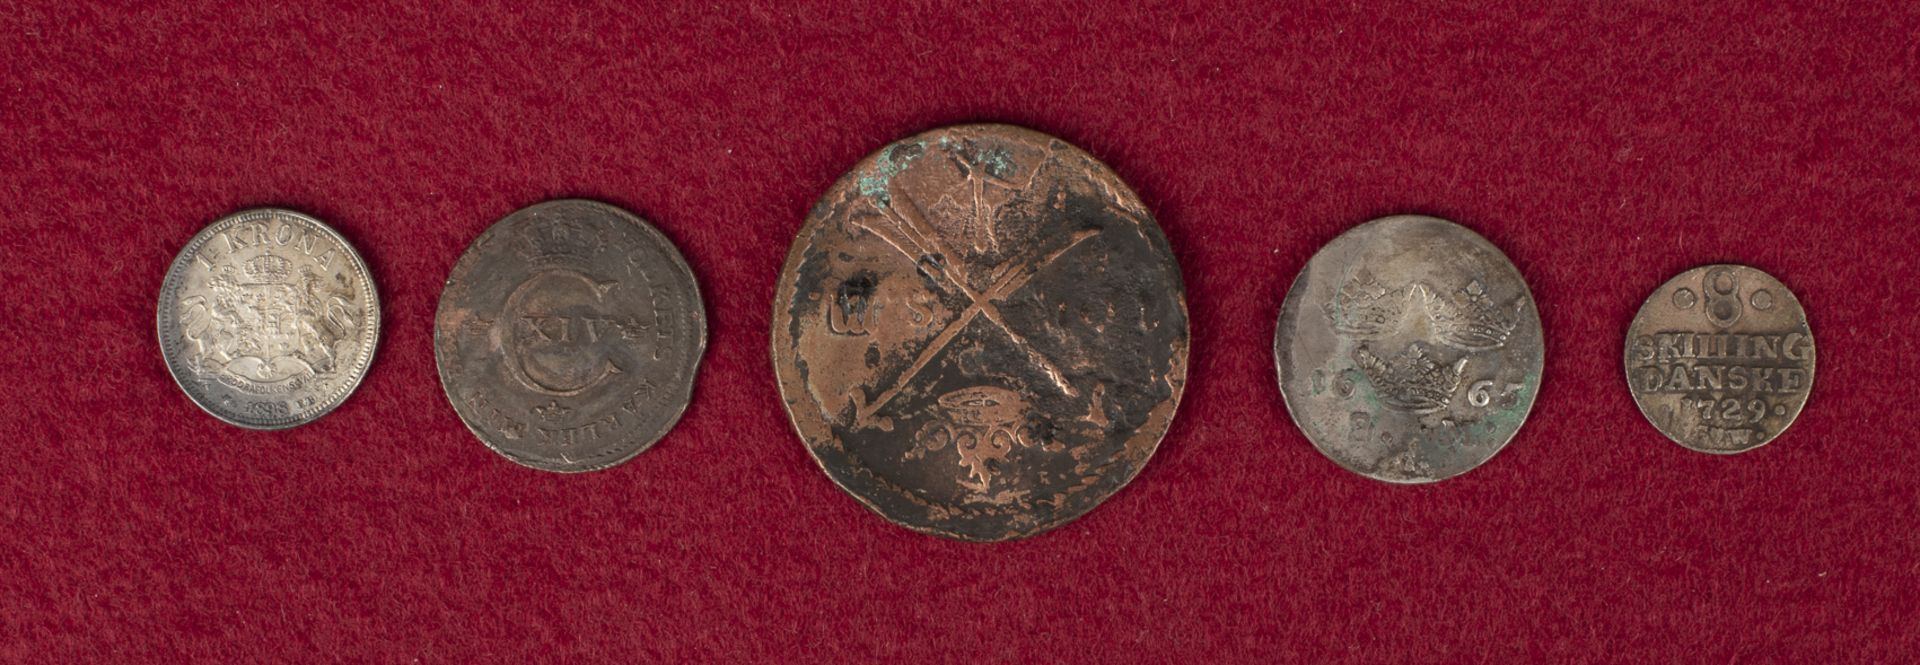 5 Münzen Skandinavien, 17. - 19. Jh. - Image 2 of 2